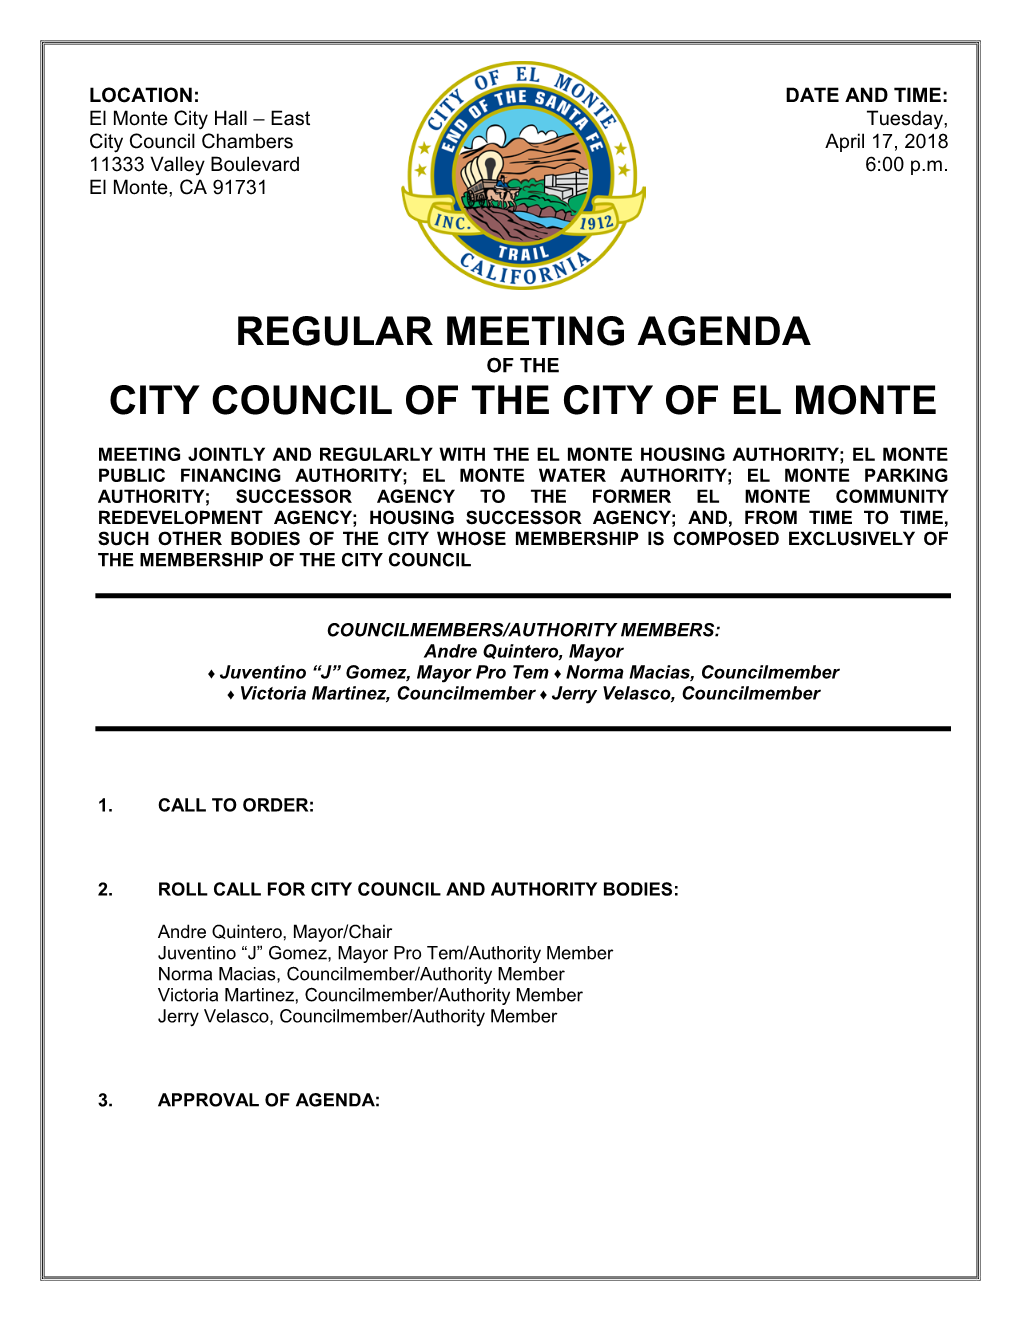 Regular Meeting Agenda City Council of the City of El